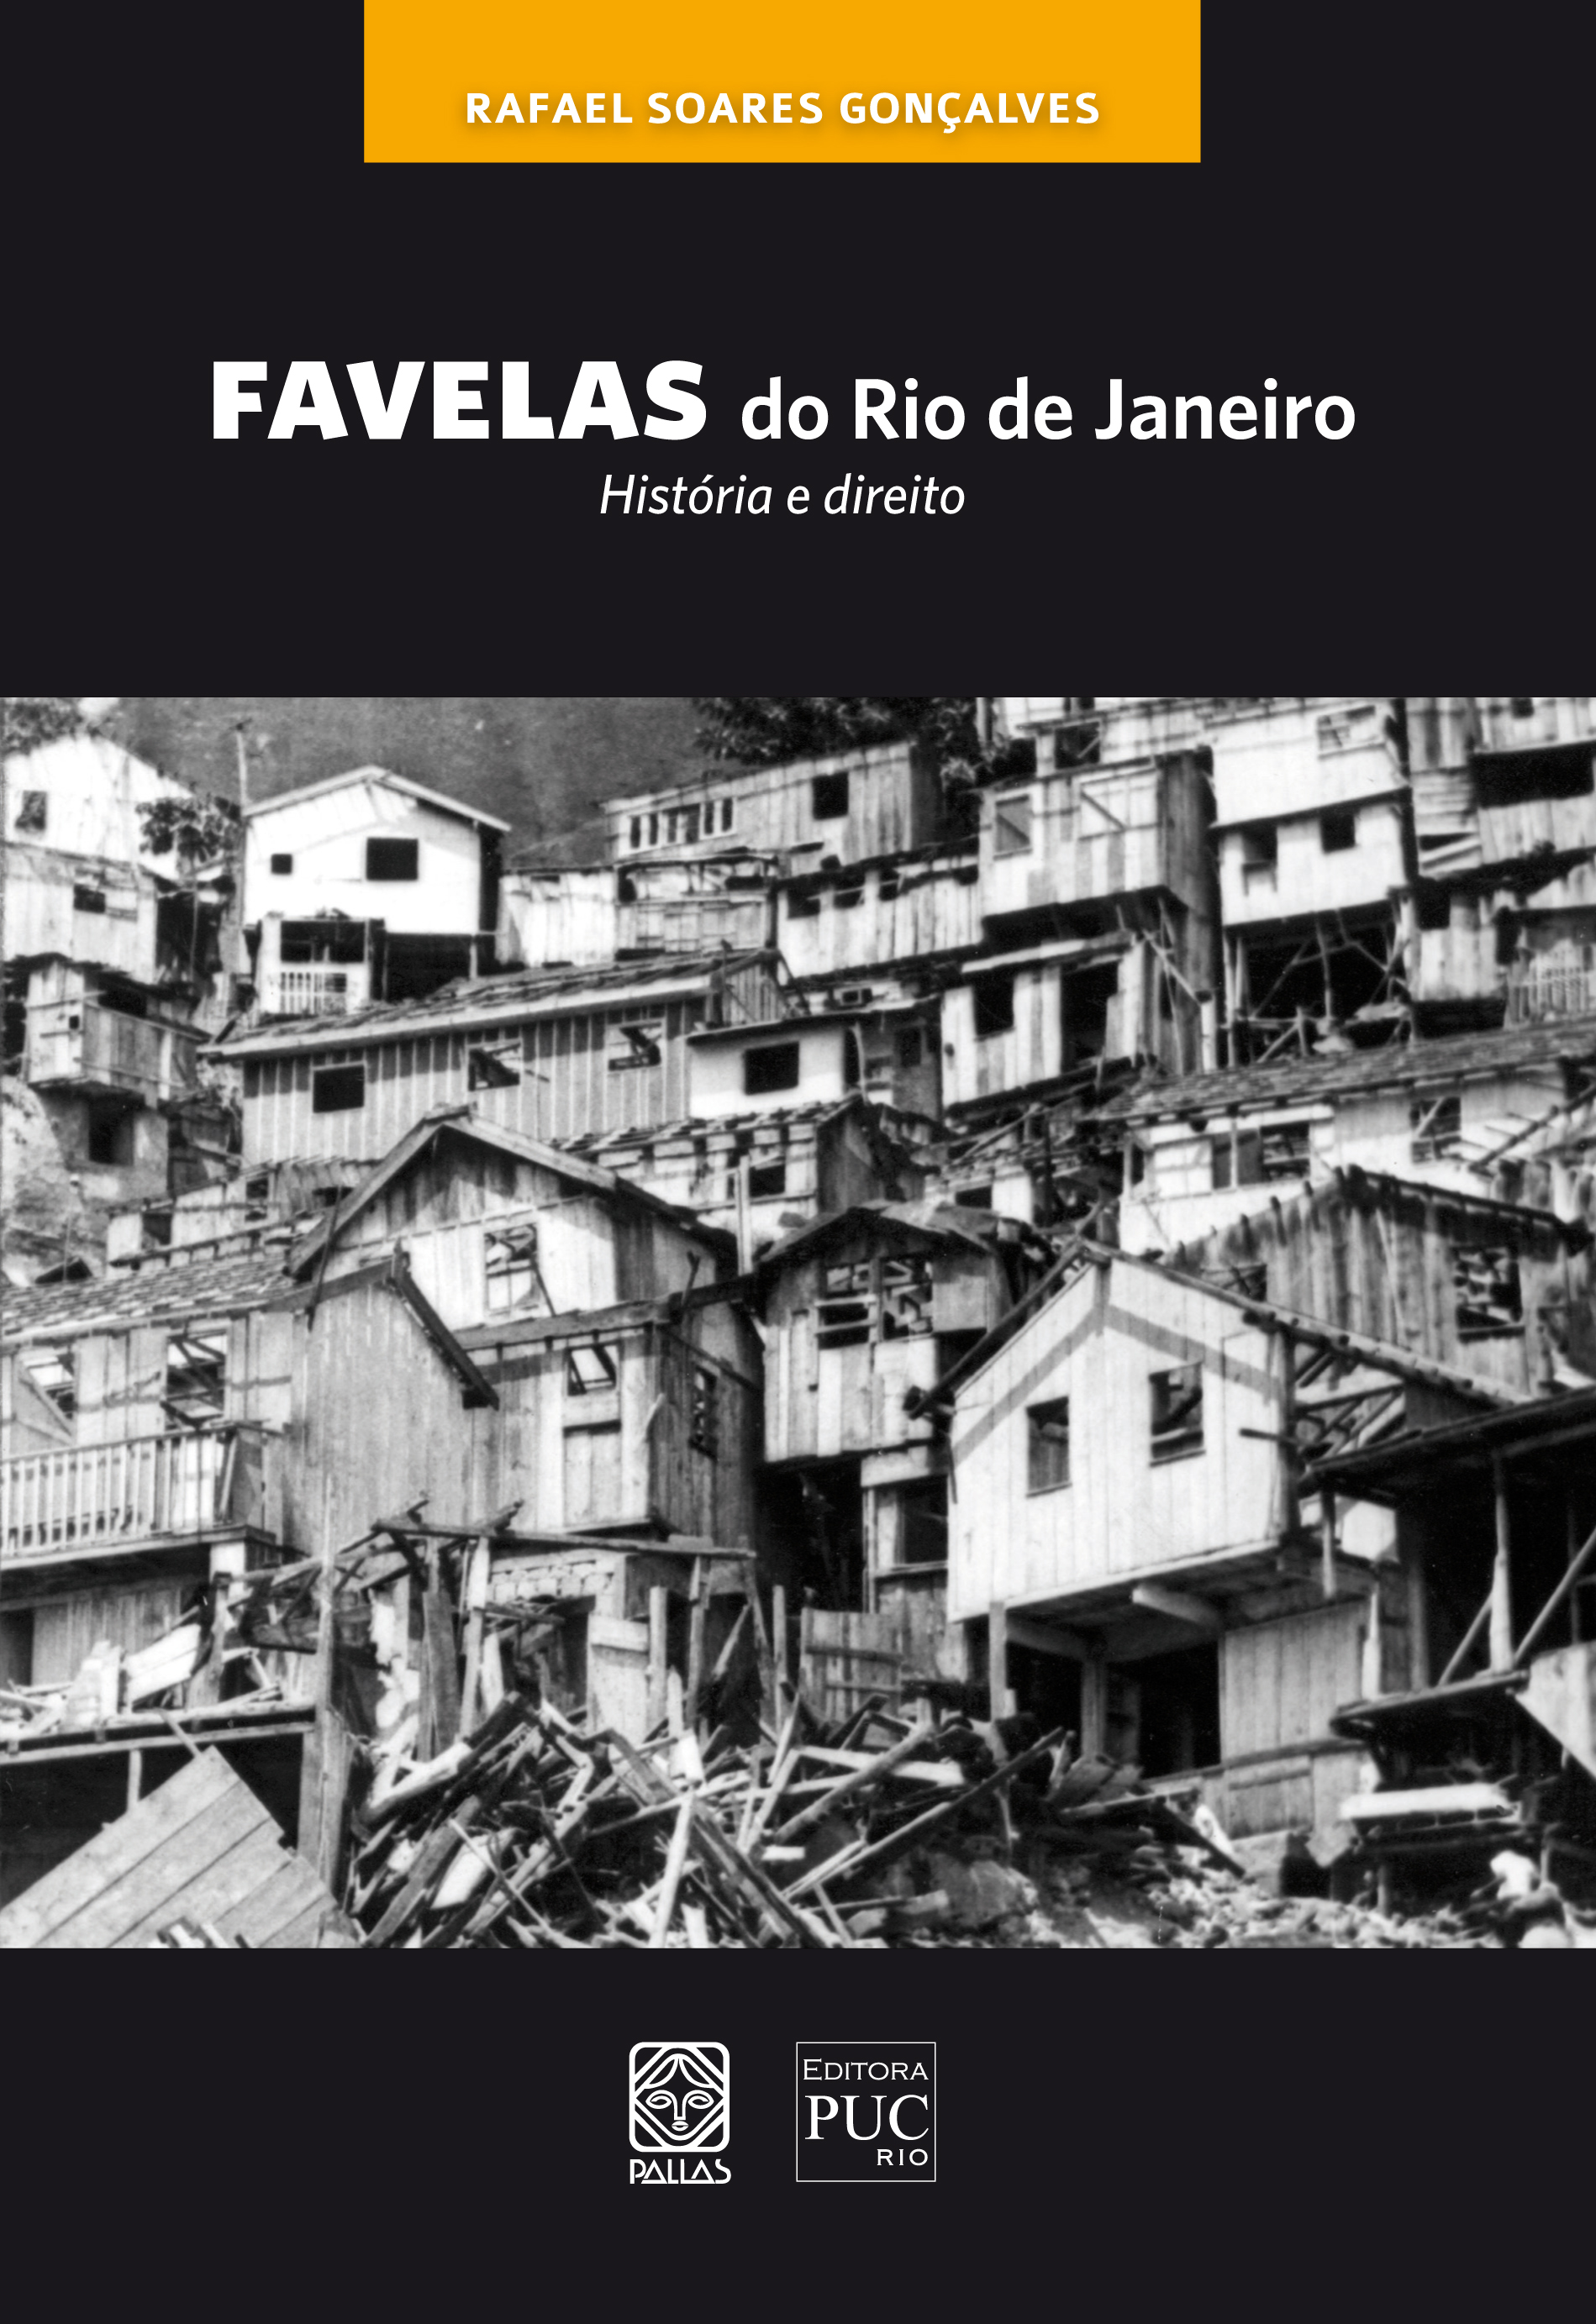 Favelas do Rio de Janeiro